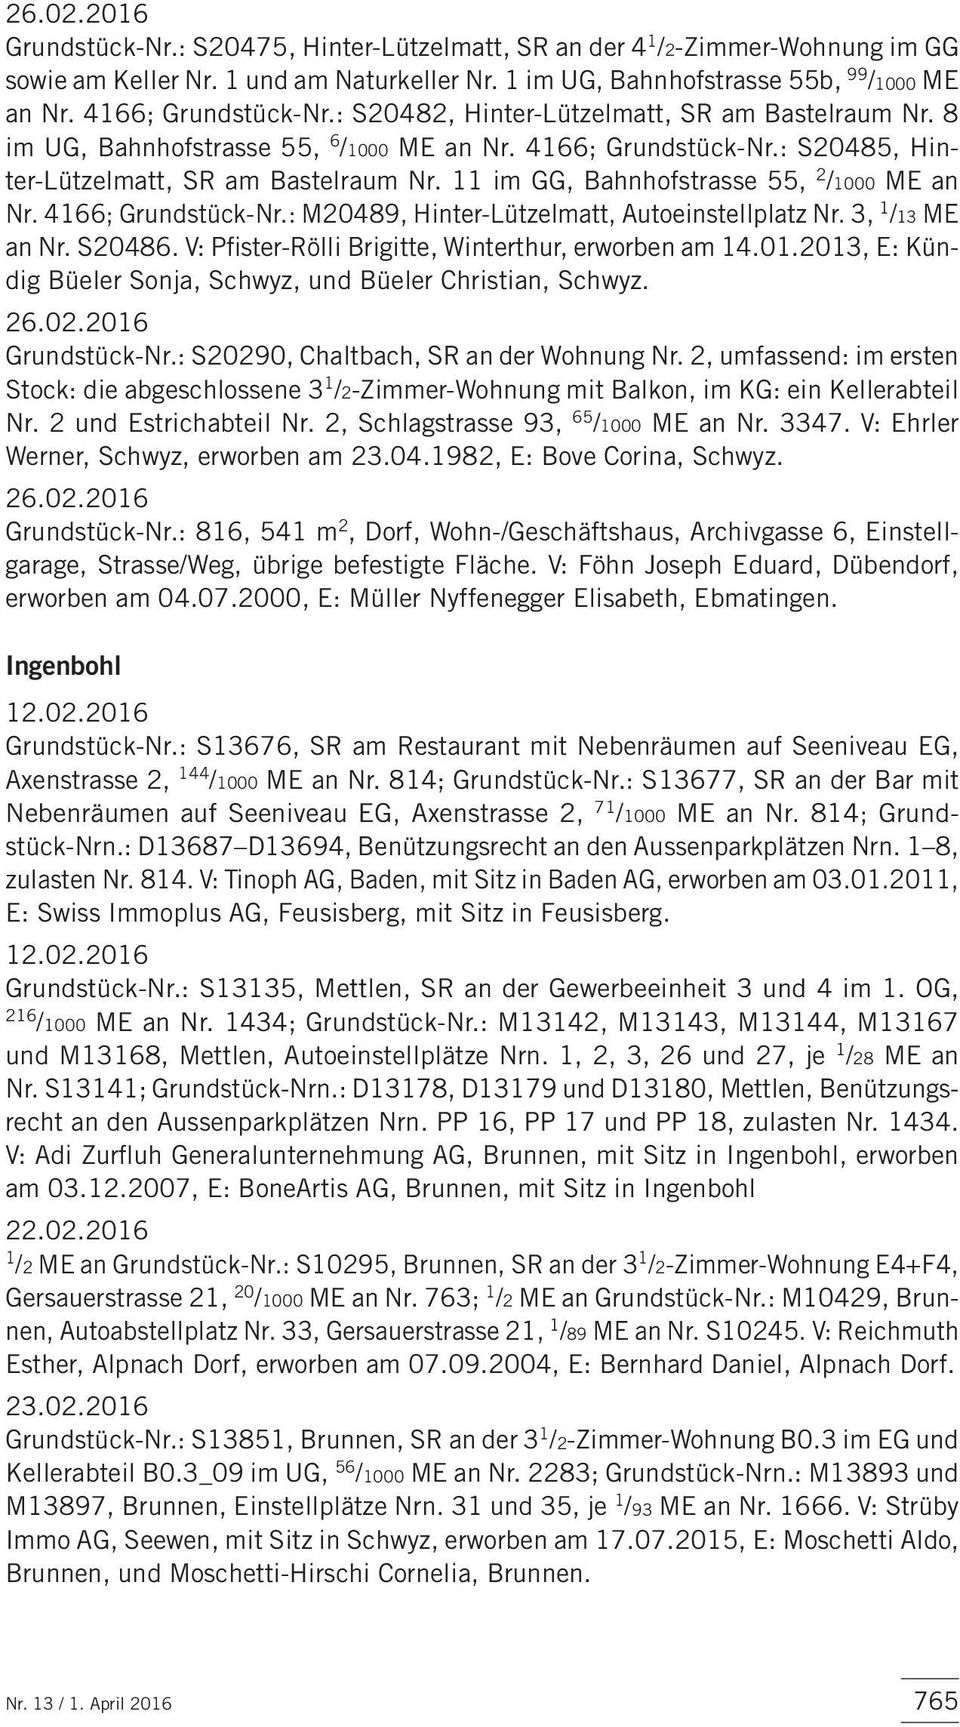 11 im GG, Bahnhofstras se 55, 2 /1000 ME an Nr. 4166; Grundstück-Nr.: M20489, Hinter-Lützelmatt, Autoeinstellplatz Nr. 3, 1 /13 ME an Nr. S20486. V: Pfister-Rölli Brigitte, Winterthur, erworben am 14.